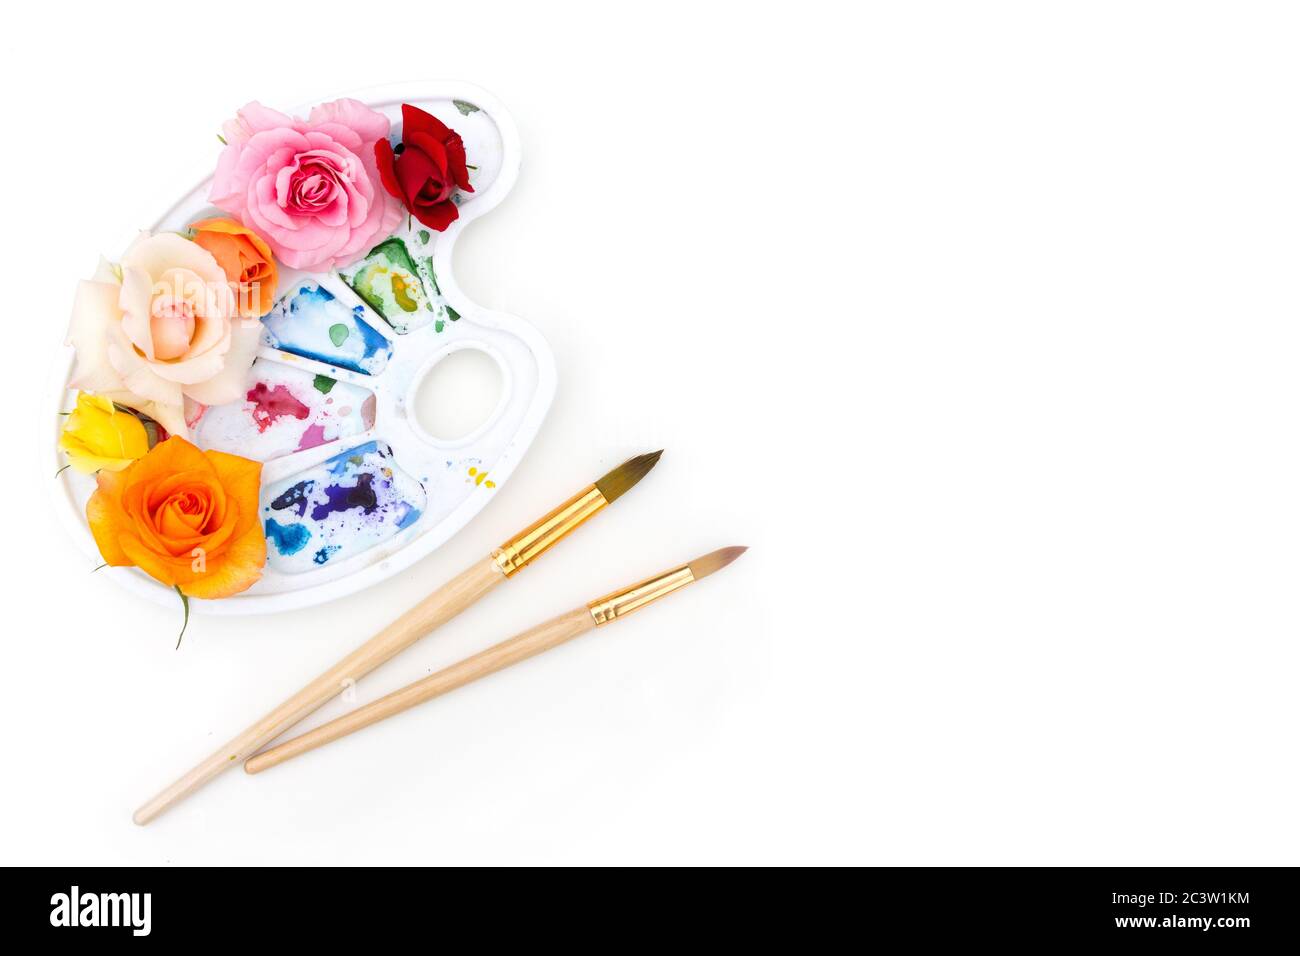 Aquarellpalette mit mehrfarbigen Rosenknospen und Kunstpinsel auf weißem Hintergrund. Die Farben des Sommers. Kreatives Konzept des bunten Sommers. Stockfoto